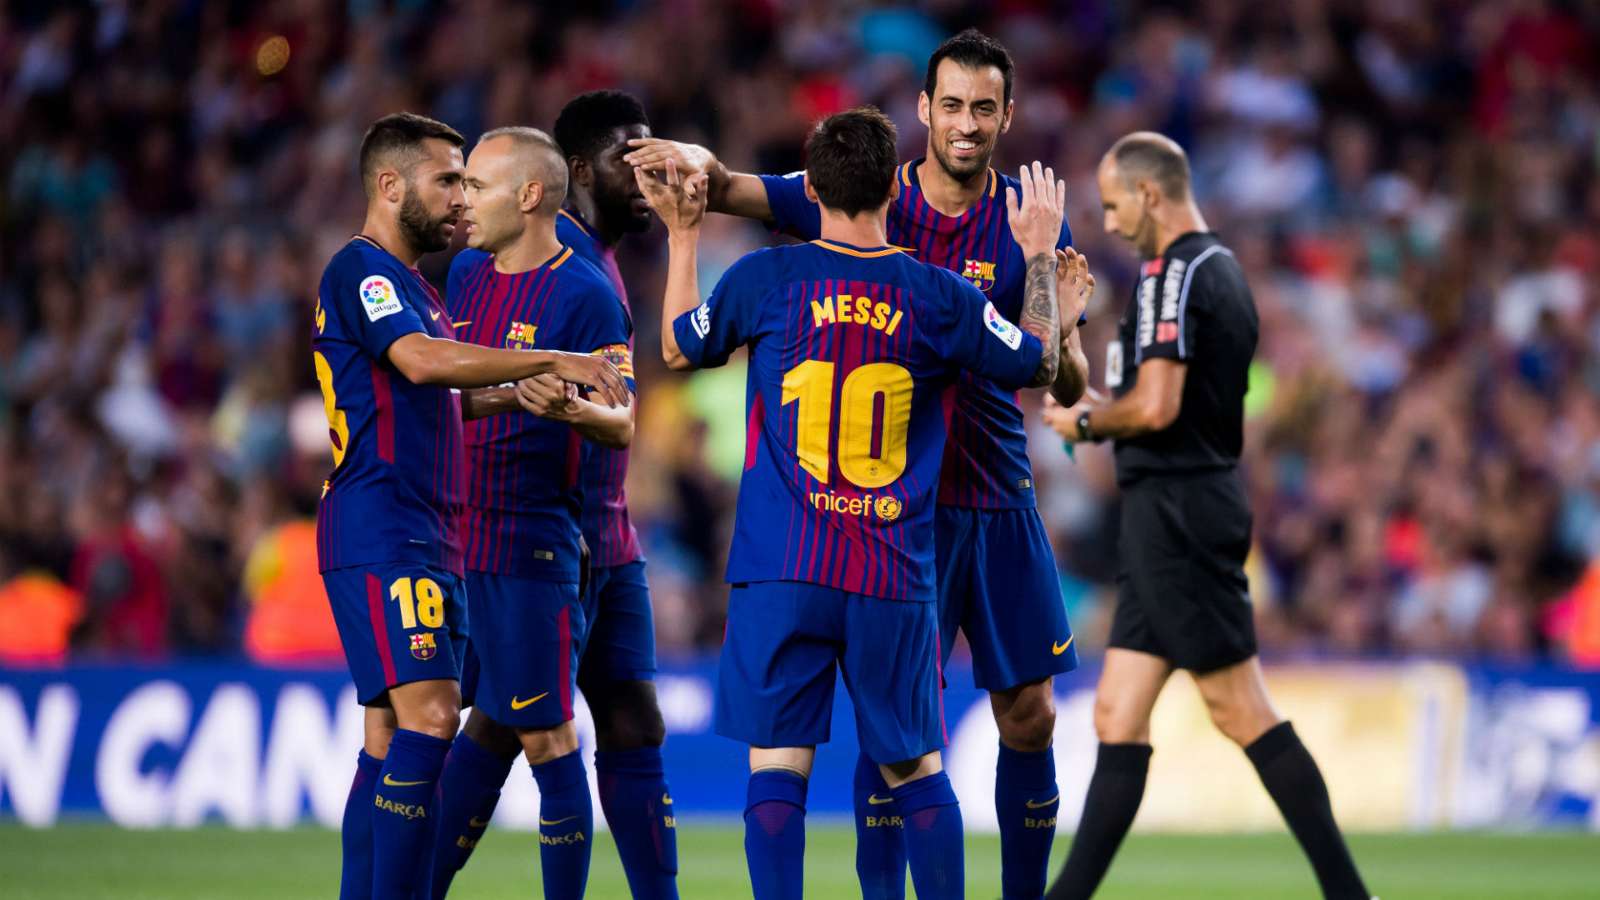 ¿Por qué se detuvo el partido del Barcelona?